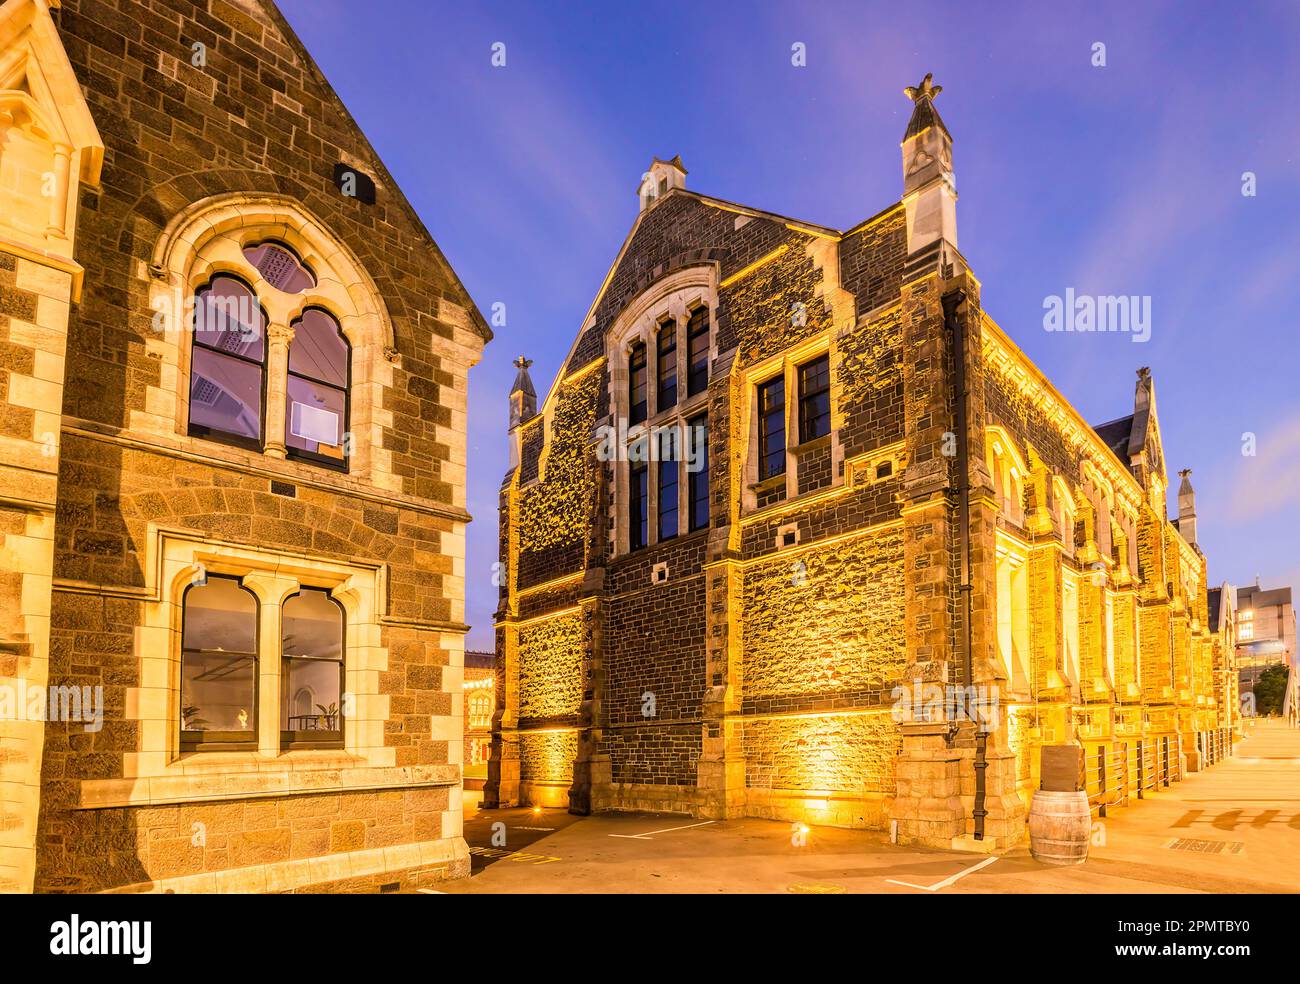 Bâtiments historiques au centre-ville de Christchurch, ville d'Australie, au coucher du soleil dans la zone publique. Banque D'Images